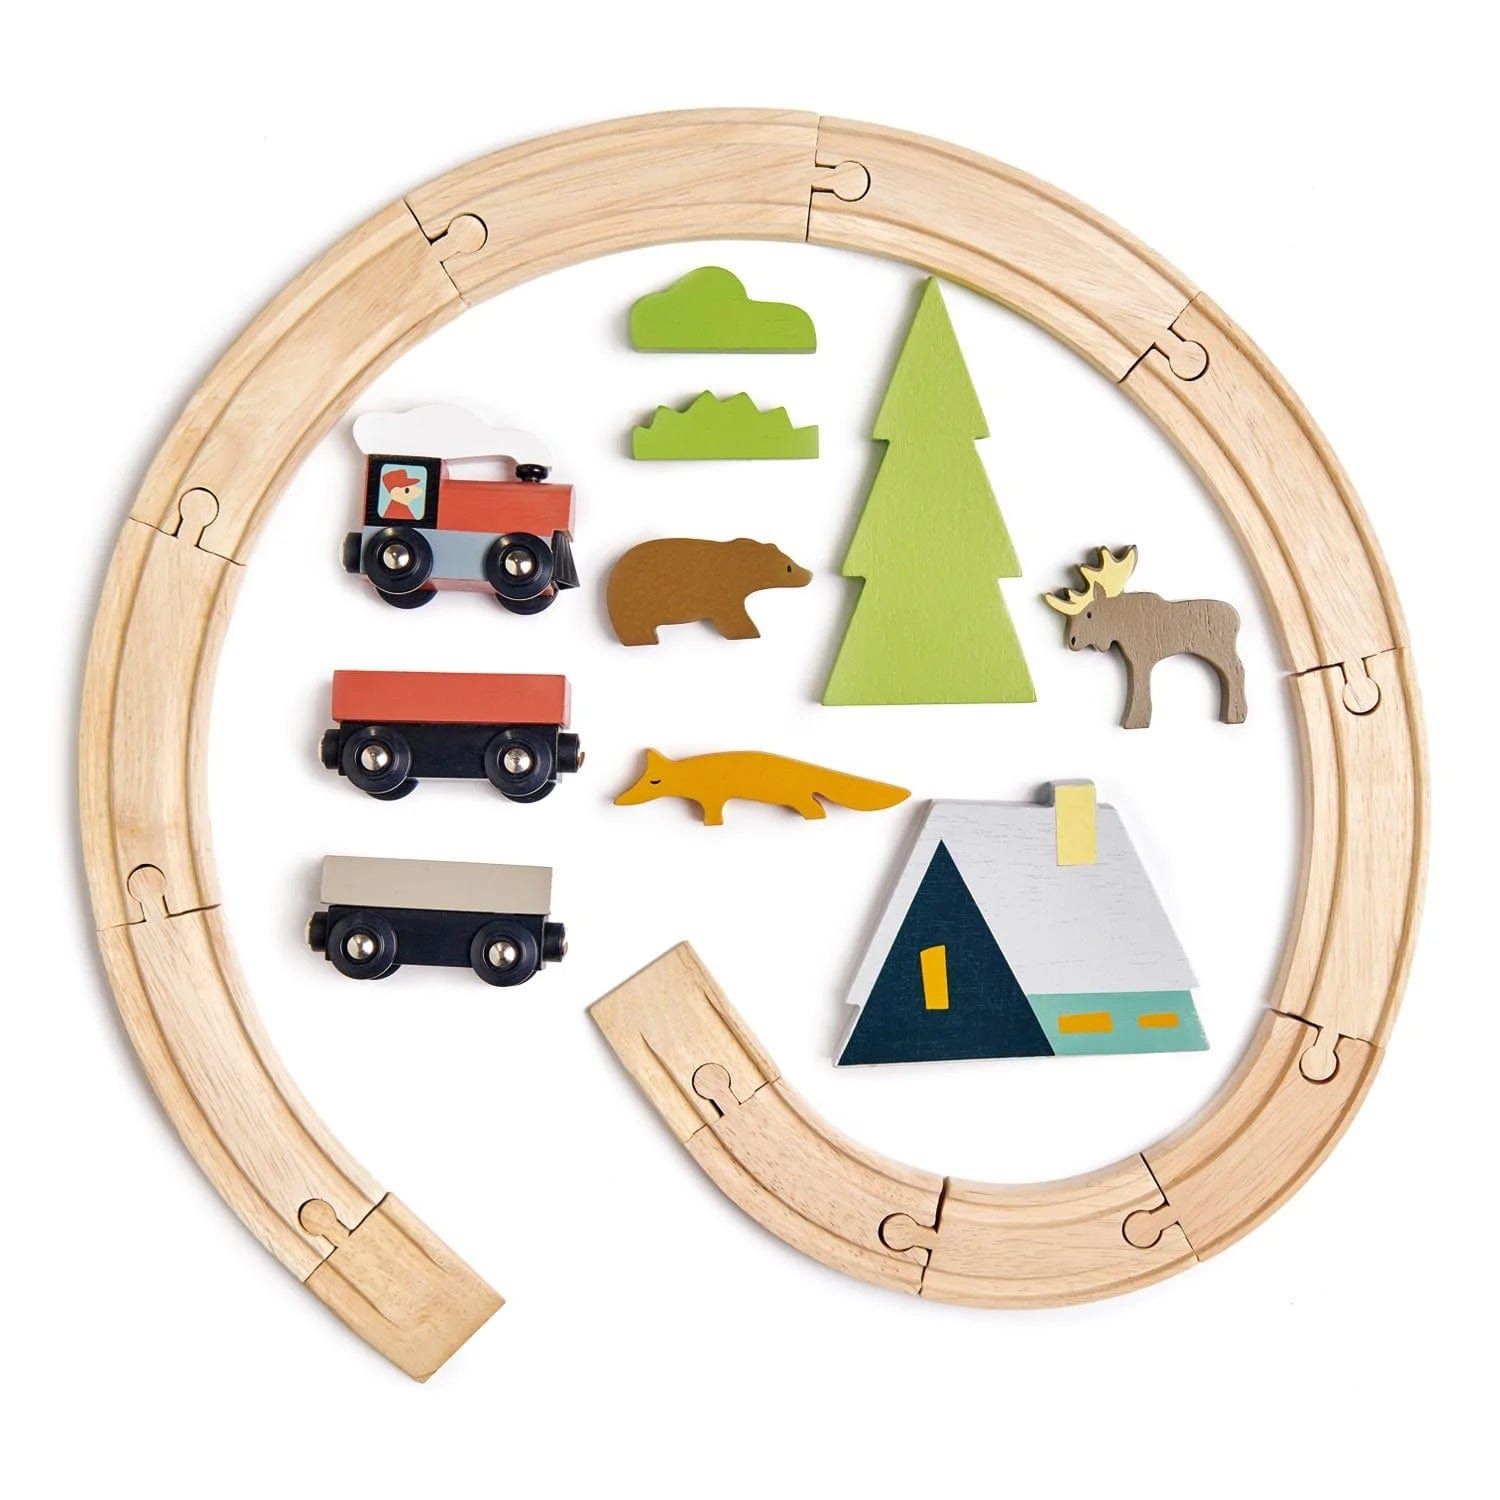 Tender Leaf Toys wooden toy Tender Leaf Toys Treetop Train Set